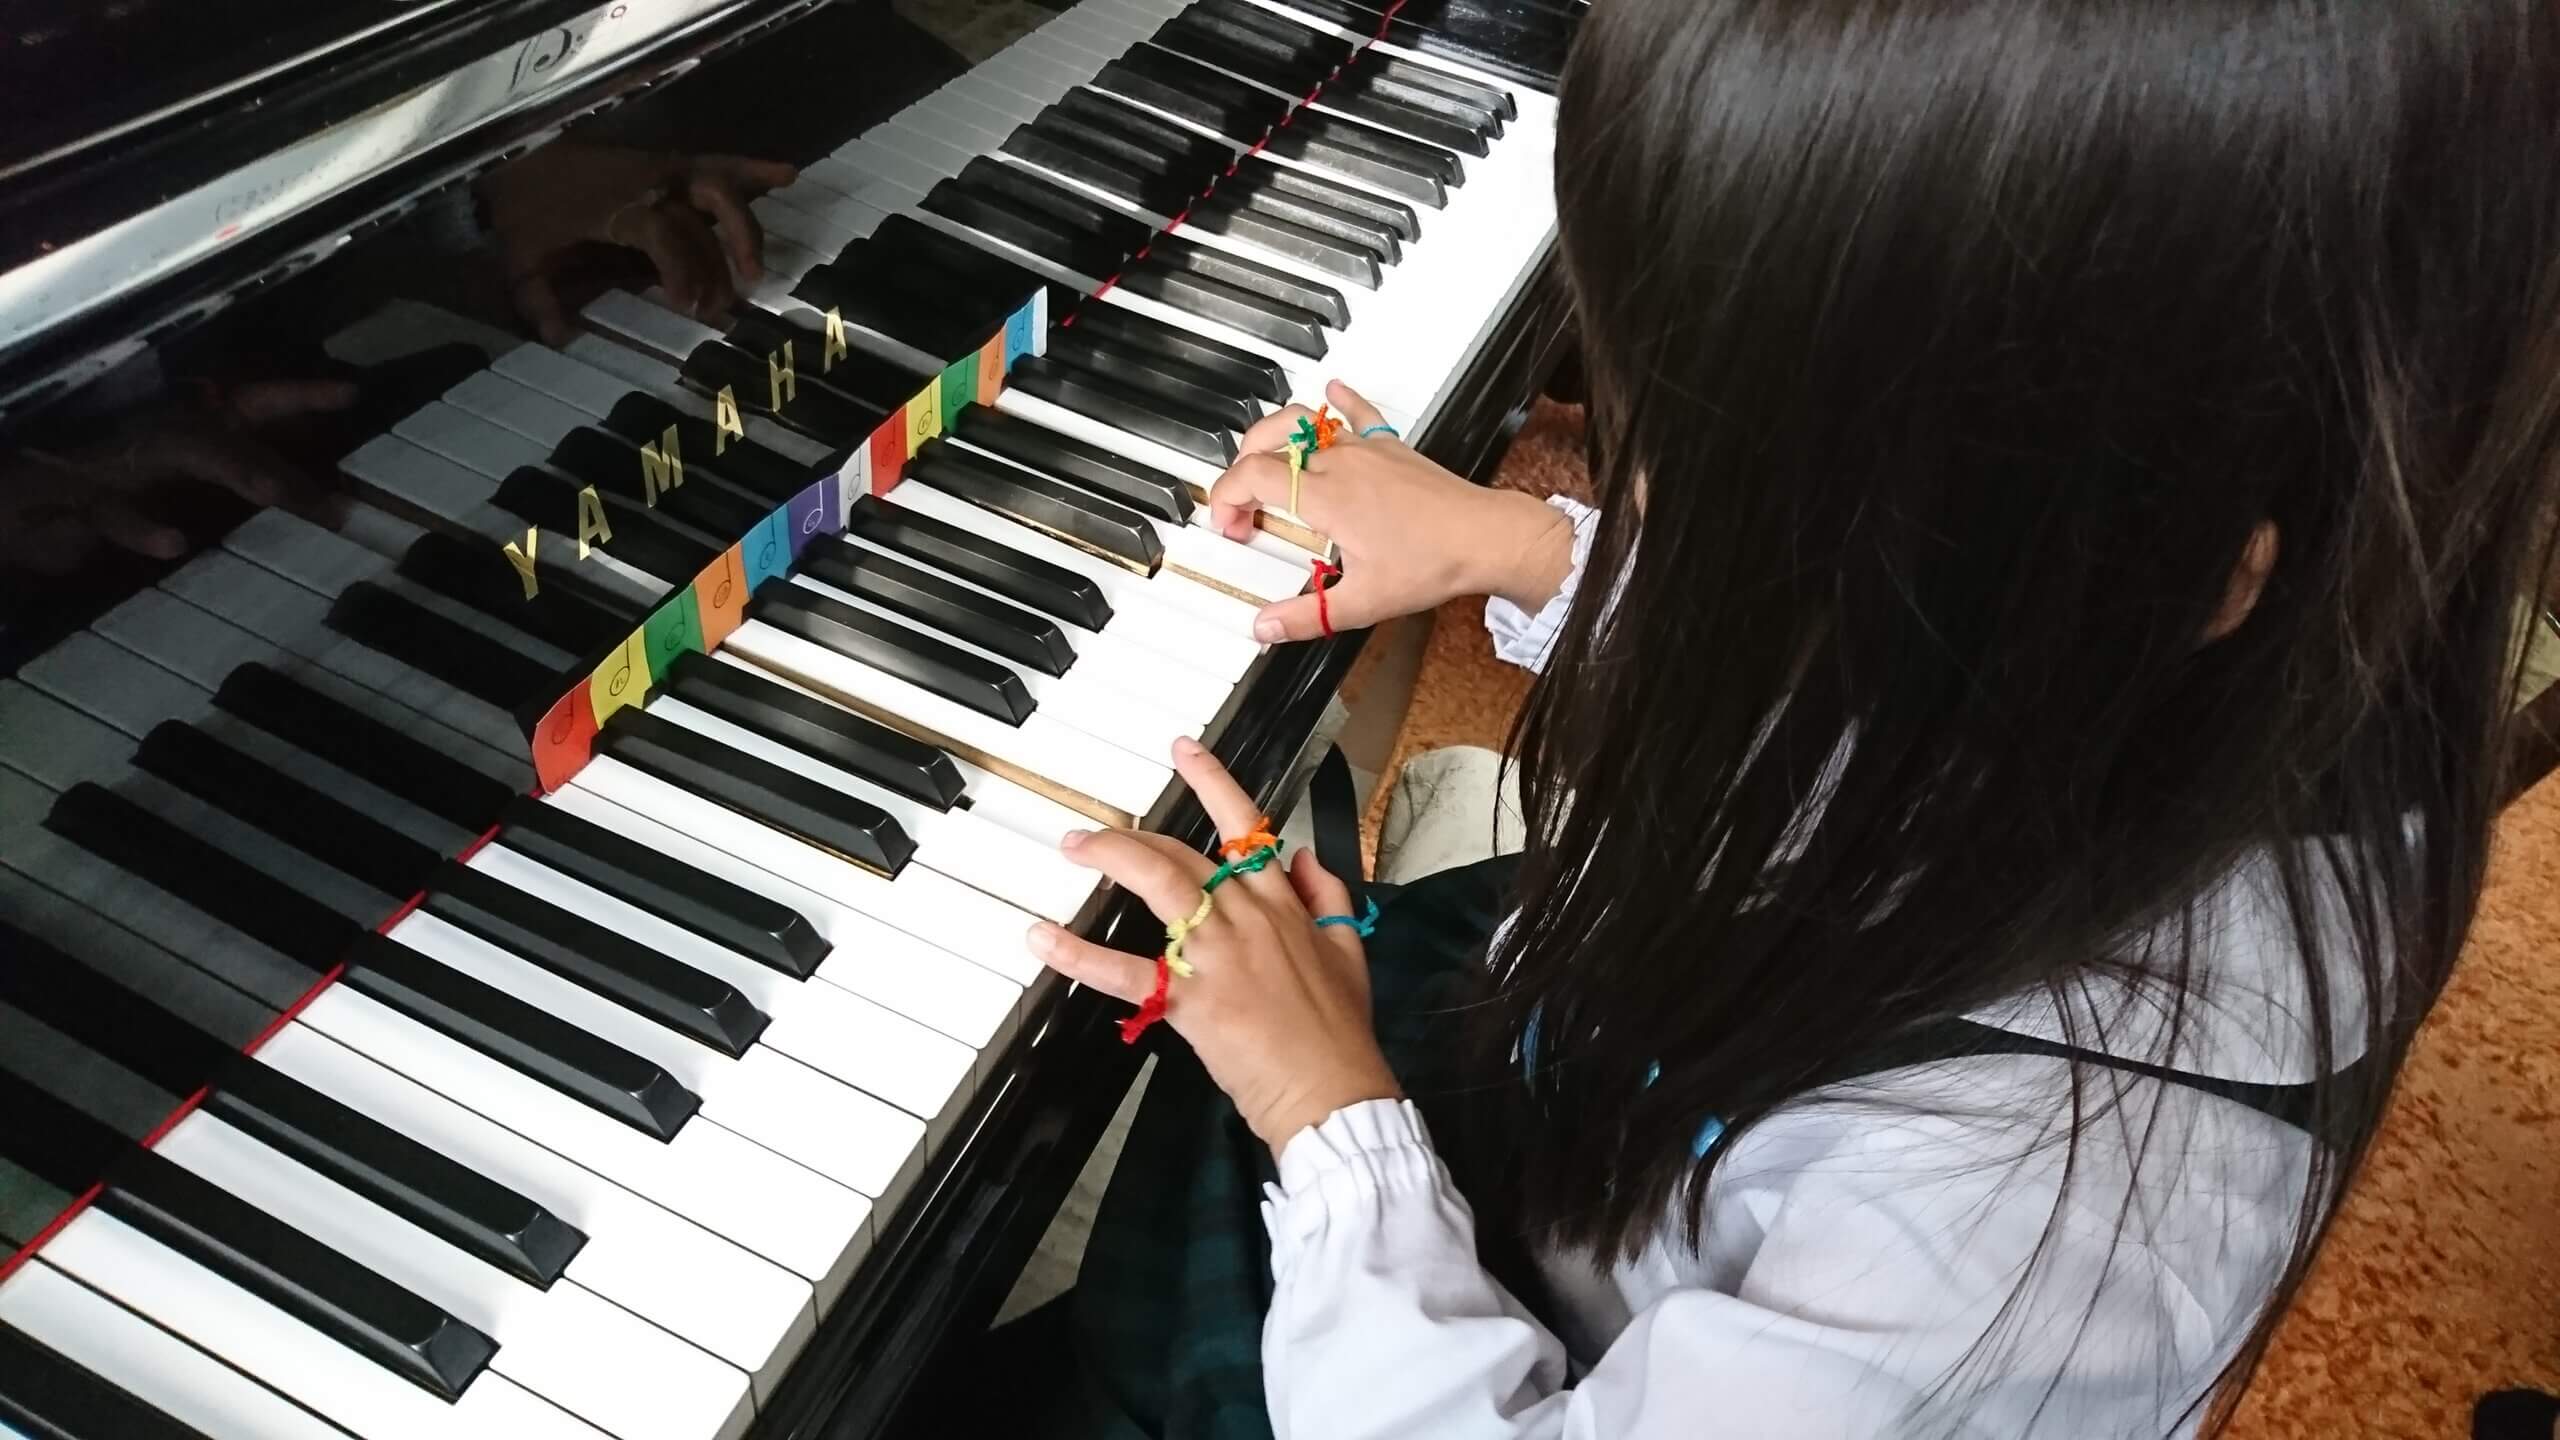 伊丹市御願塚のピアノ教室